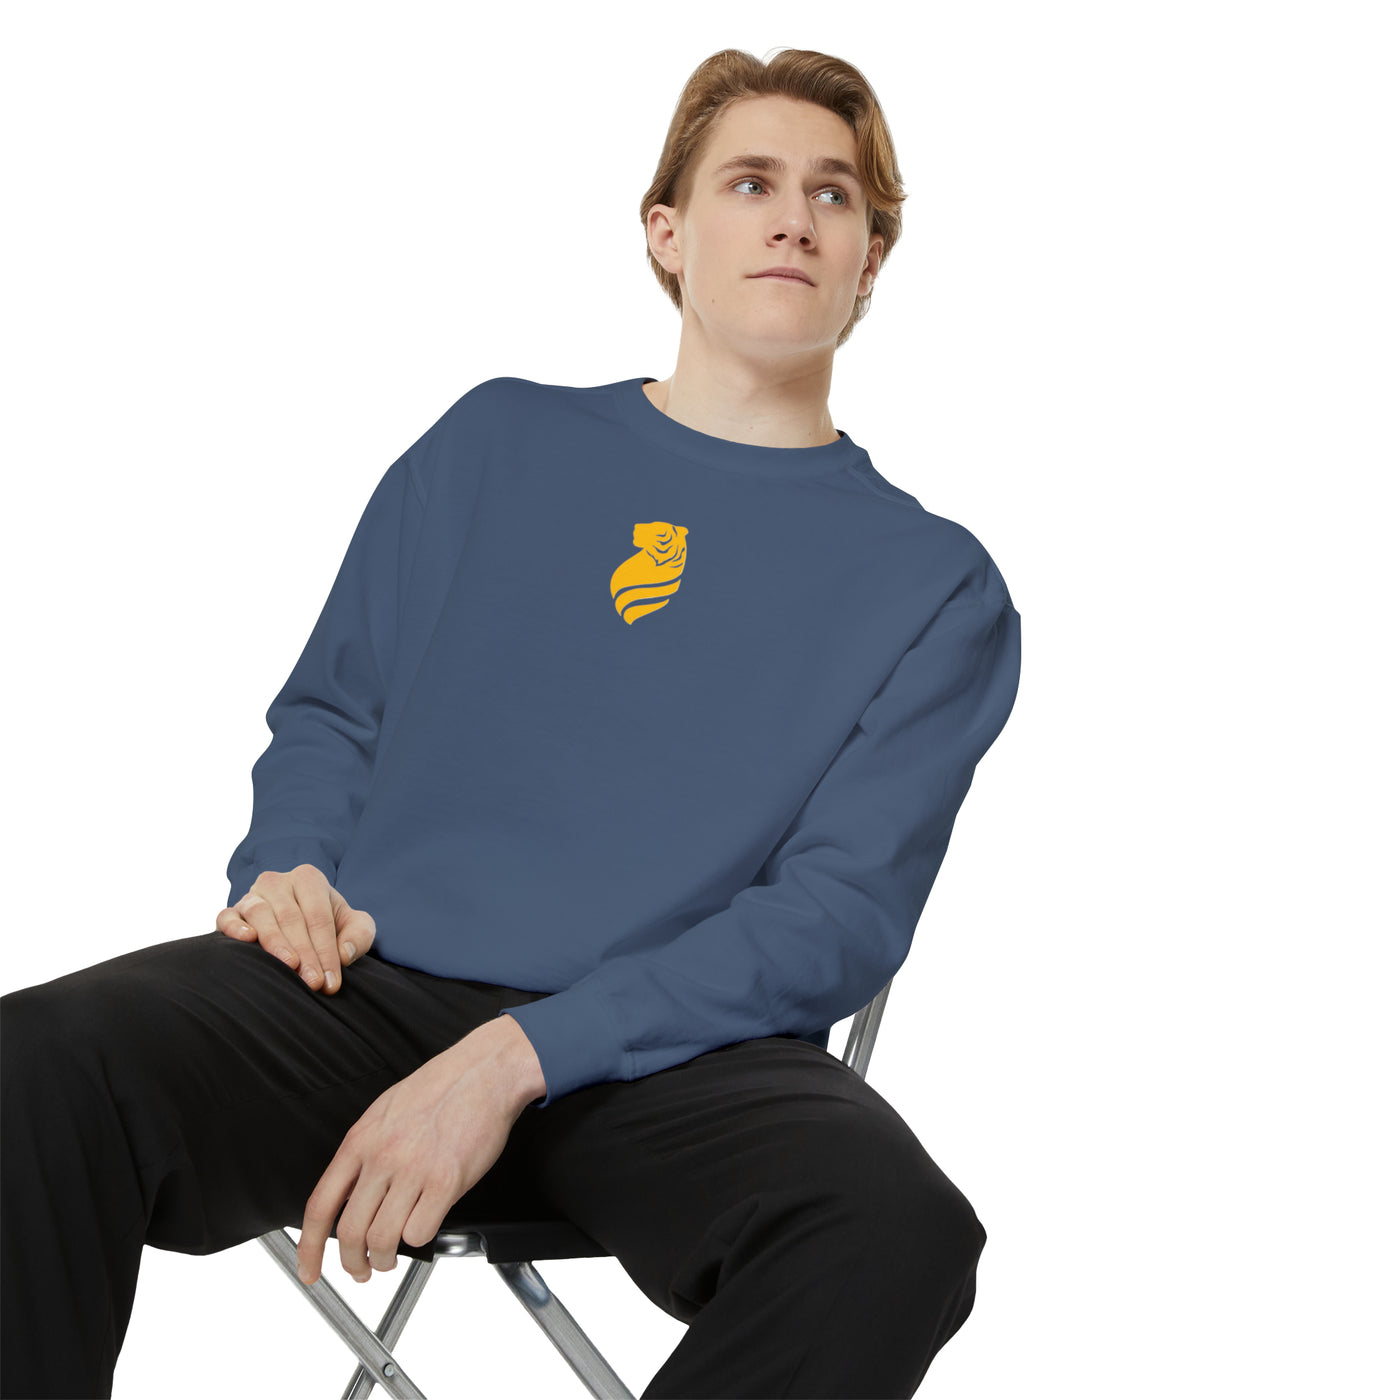 Men’s “Tatted Tiger” Garment-Dyed Sweatshirt